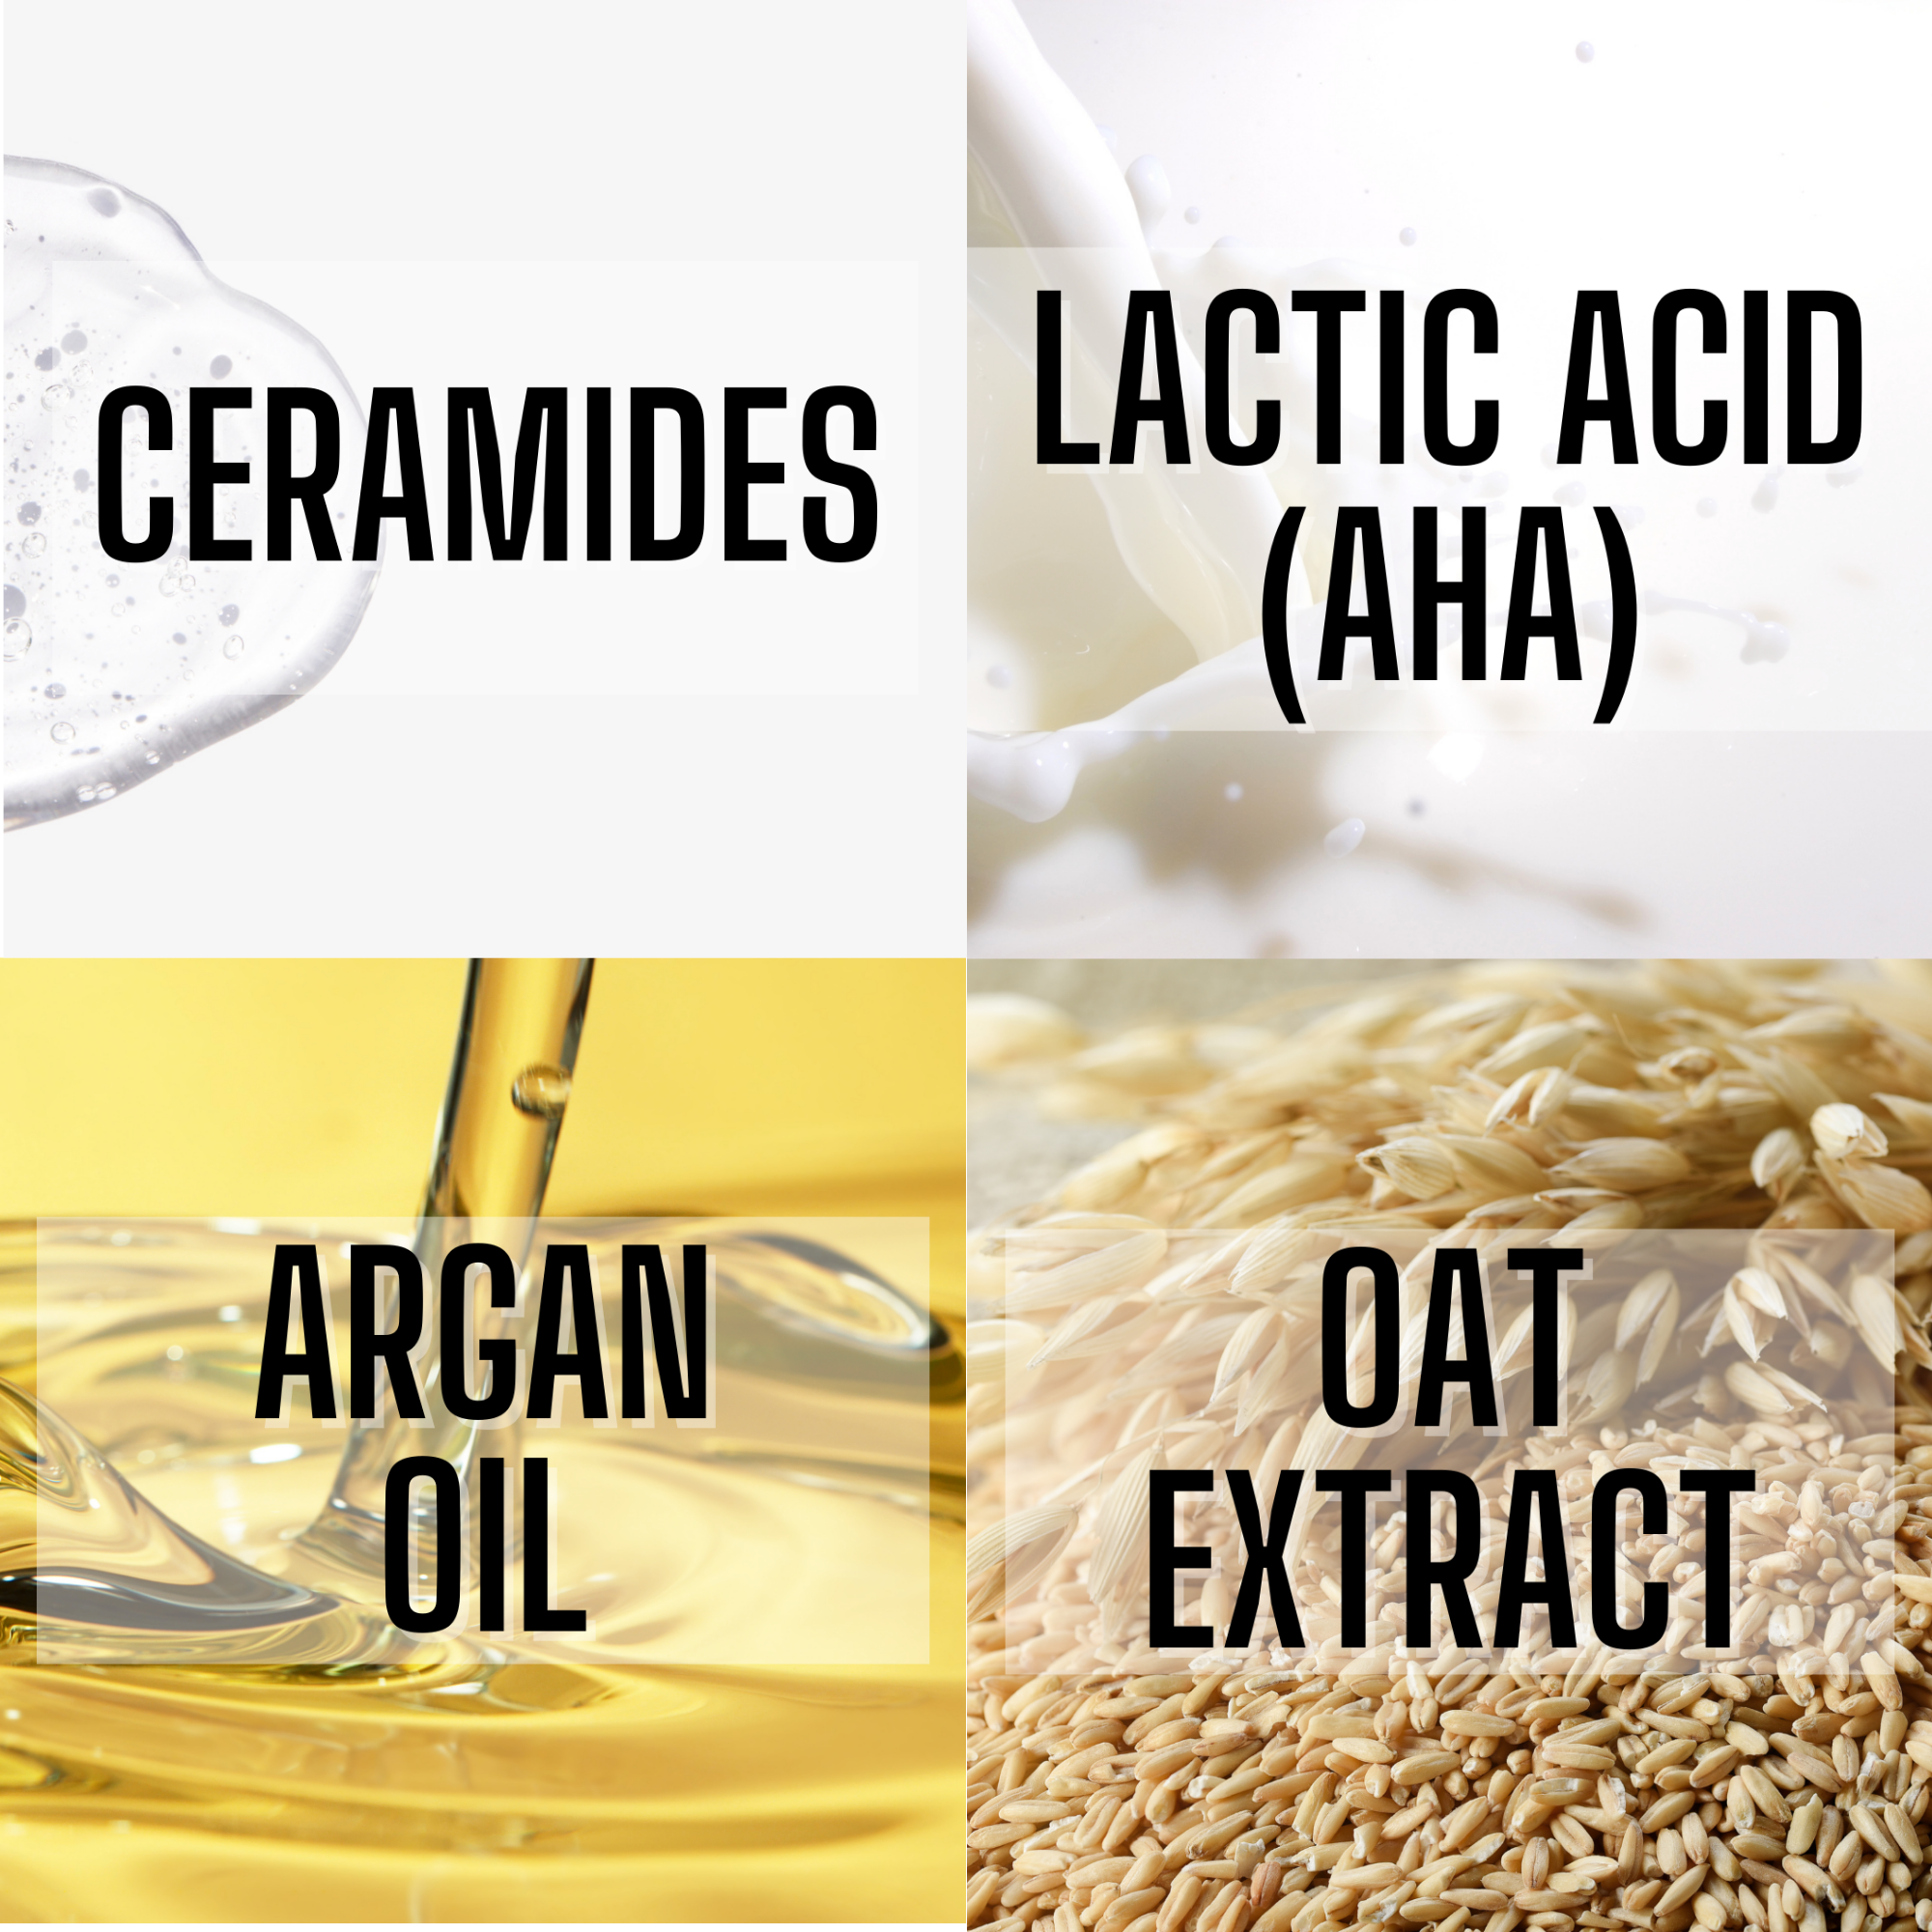 Nourish vulva wash key ingredients ceramides, lactic acid aha, argan oil and oat extract